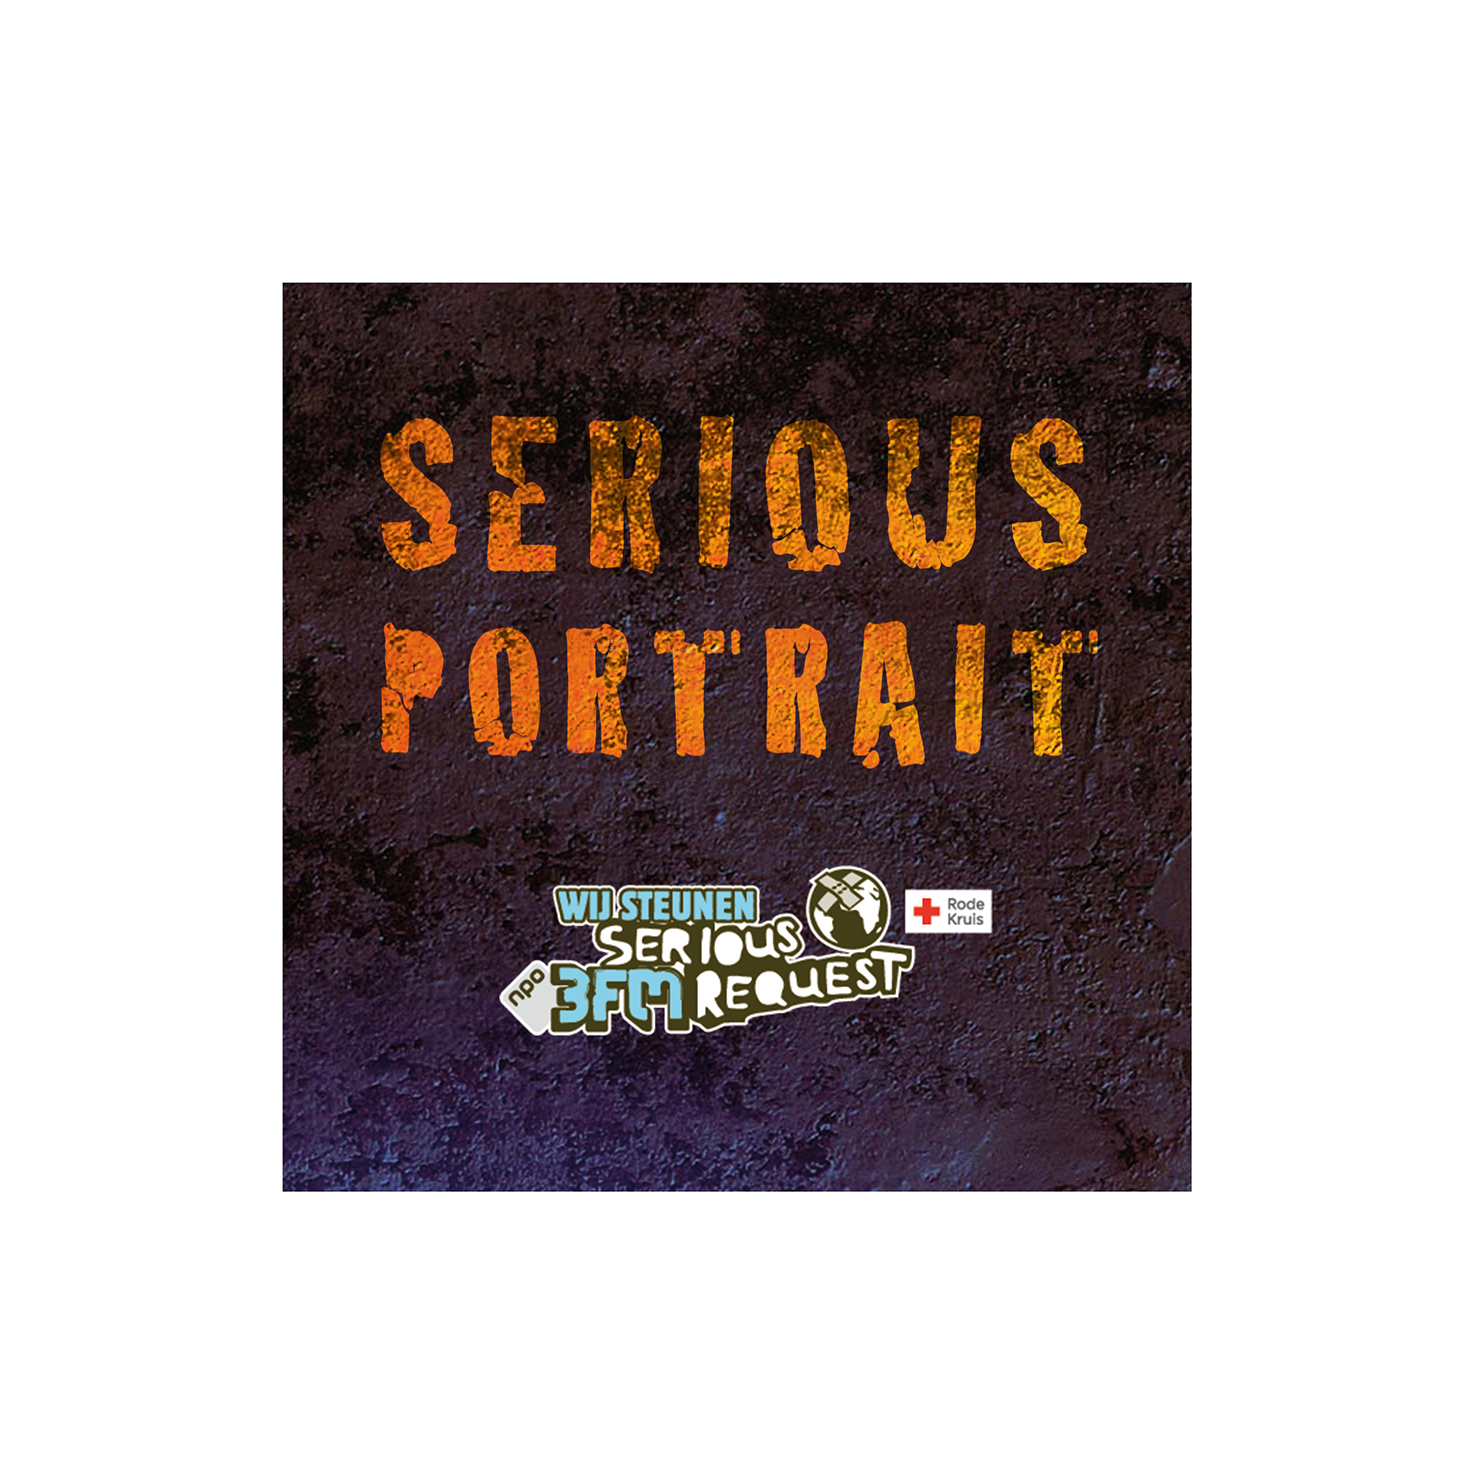 de-beeldmarketeers-serious-portrait-logo-voor-serious-request-2014_2.jpg